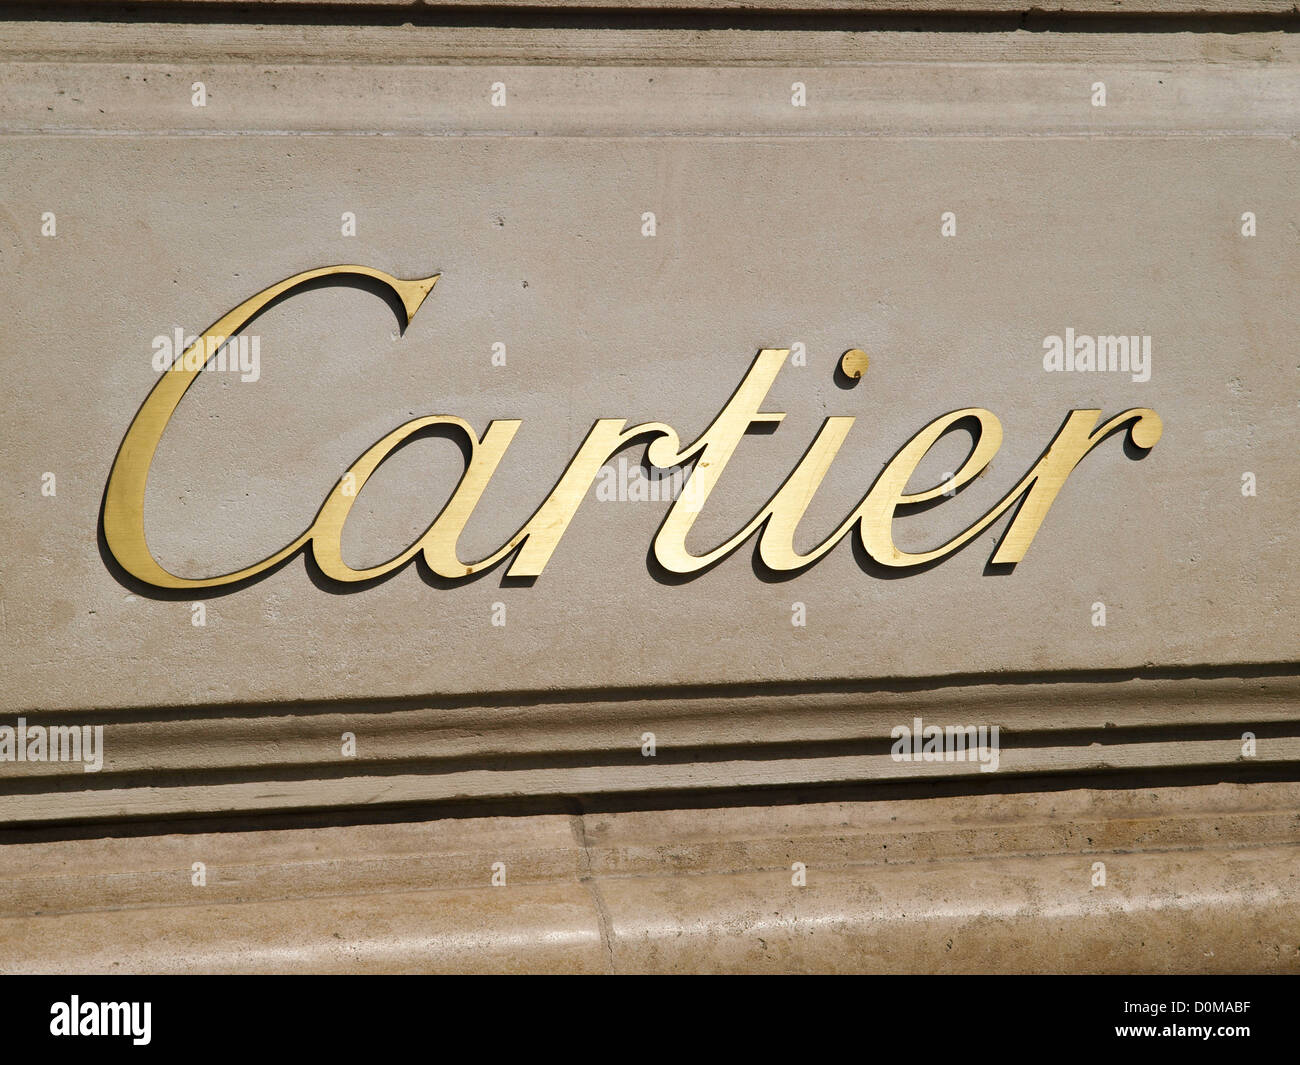 Paris, Champs Elysees, Cartier, France Stock Photo